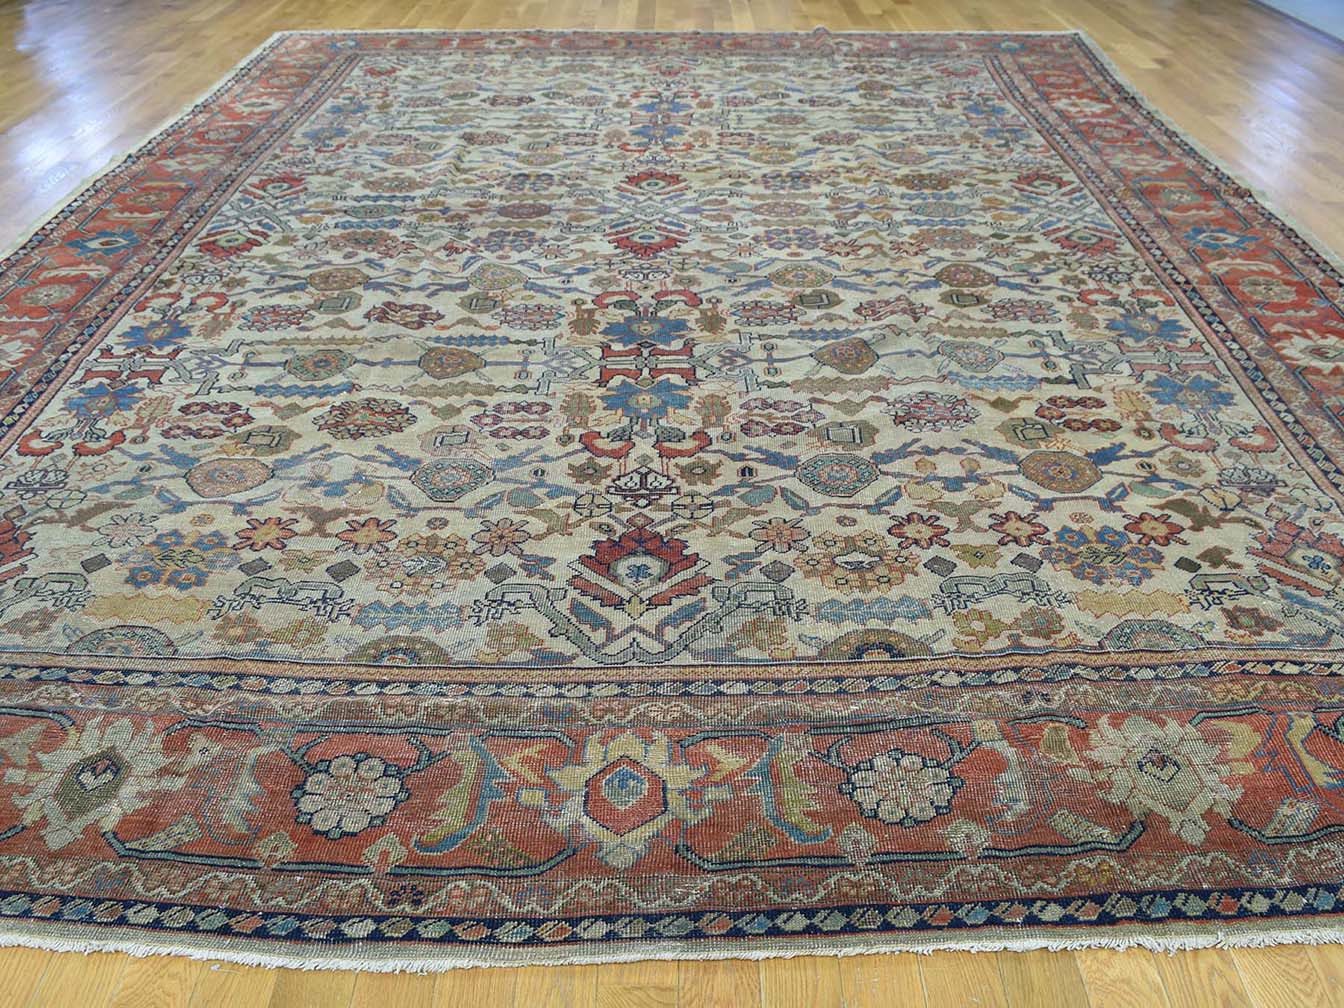 Antique mahal Carpet - # 55511